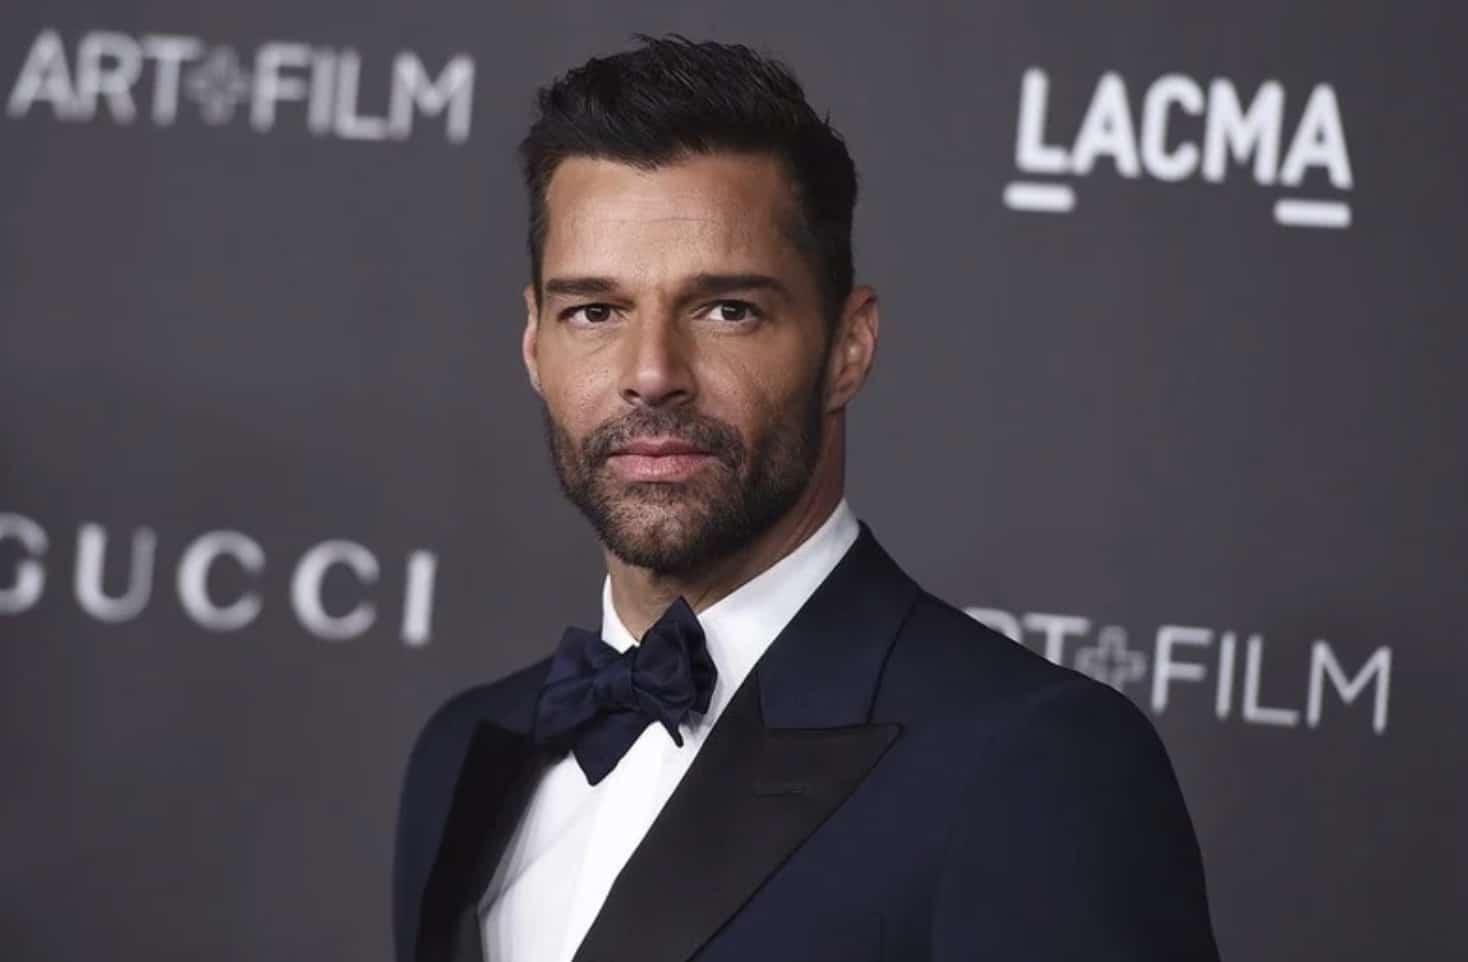 Ordinanza restrittiva nei confronti di Ricky Martin per violenza domestica